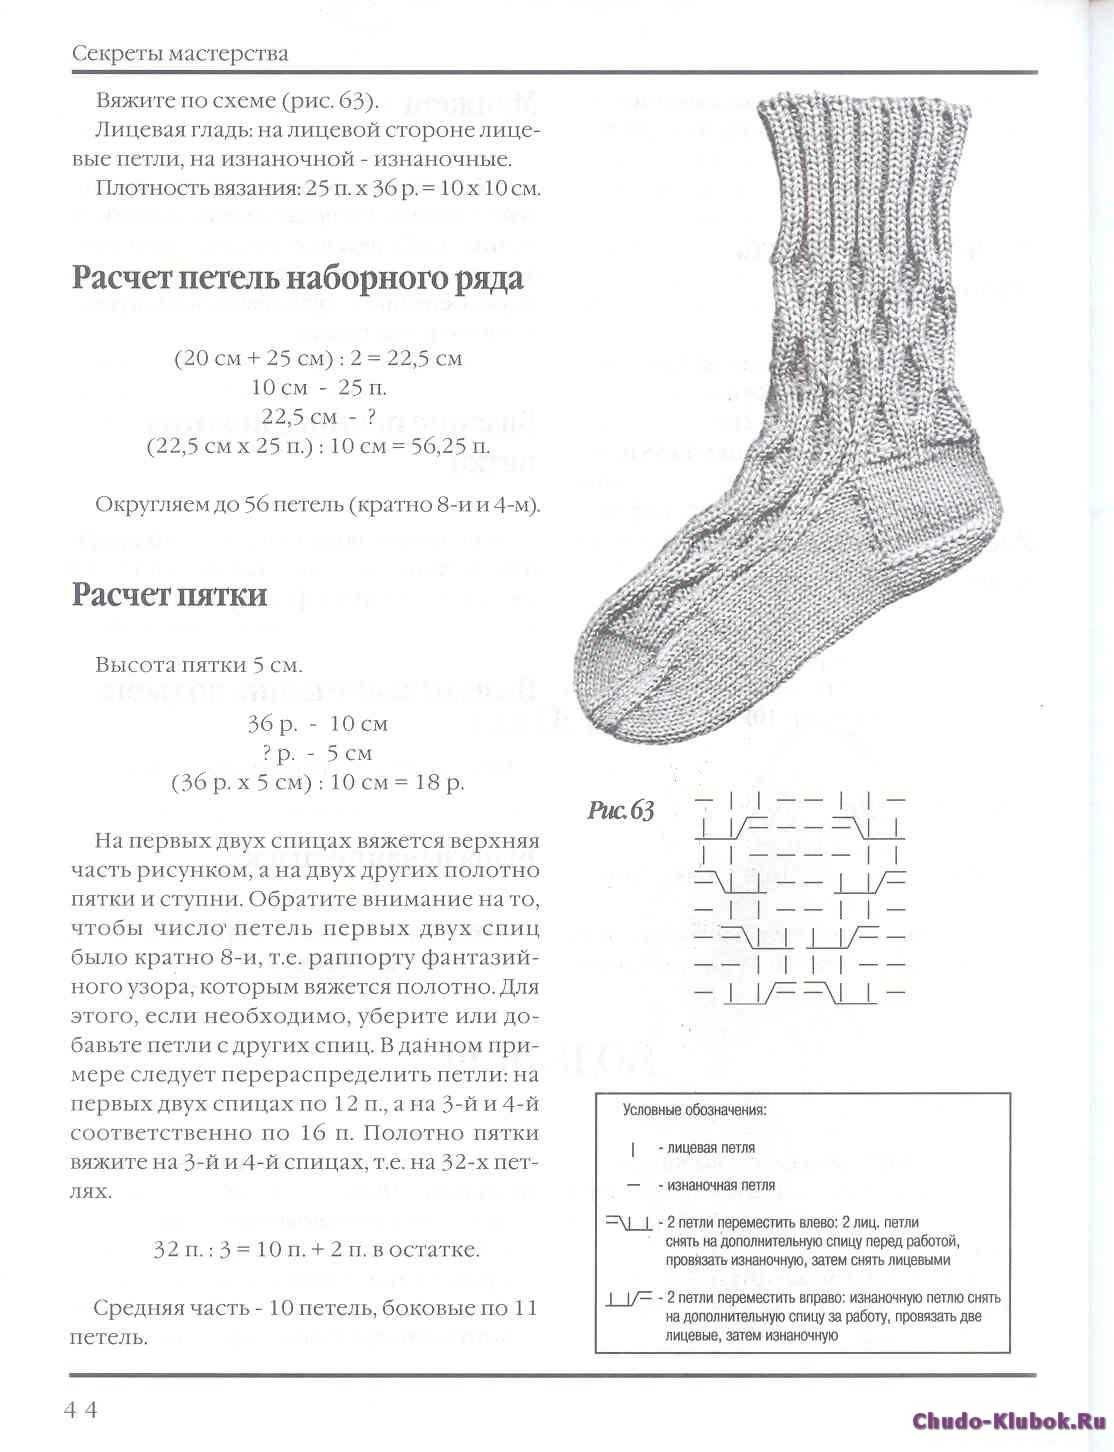 Интересные носки спицами с описанием и схемами